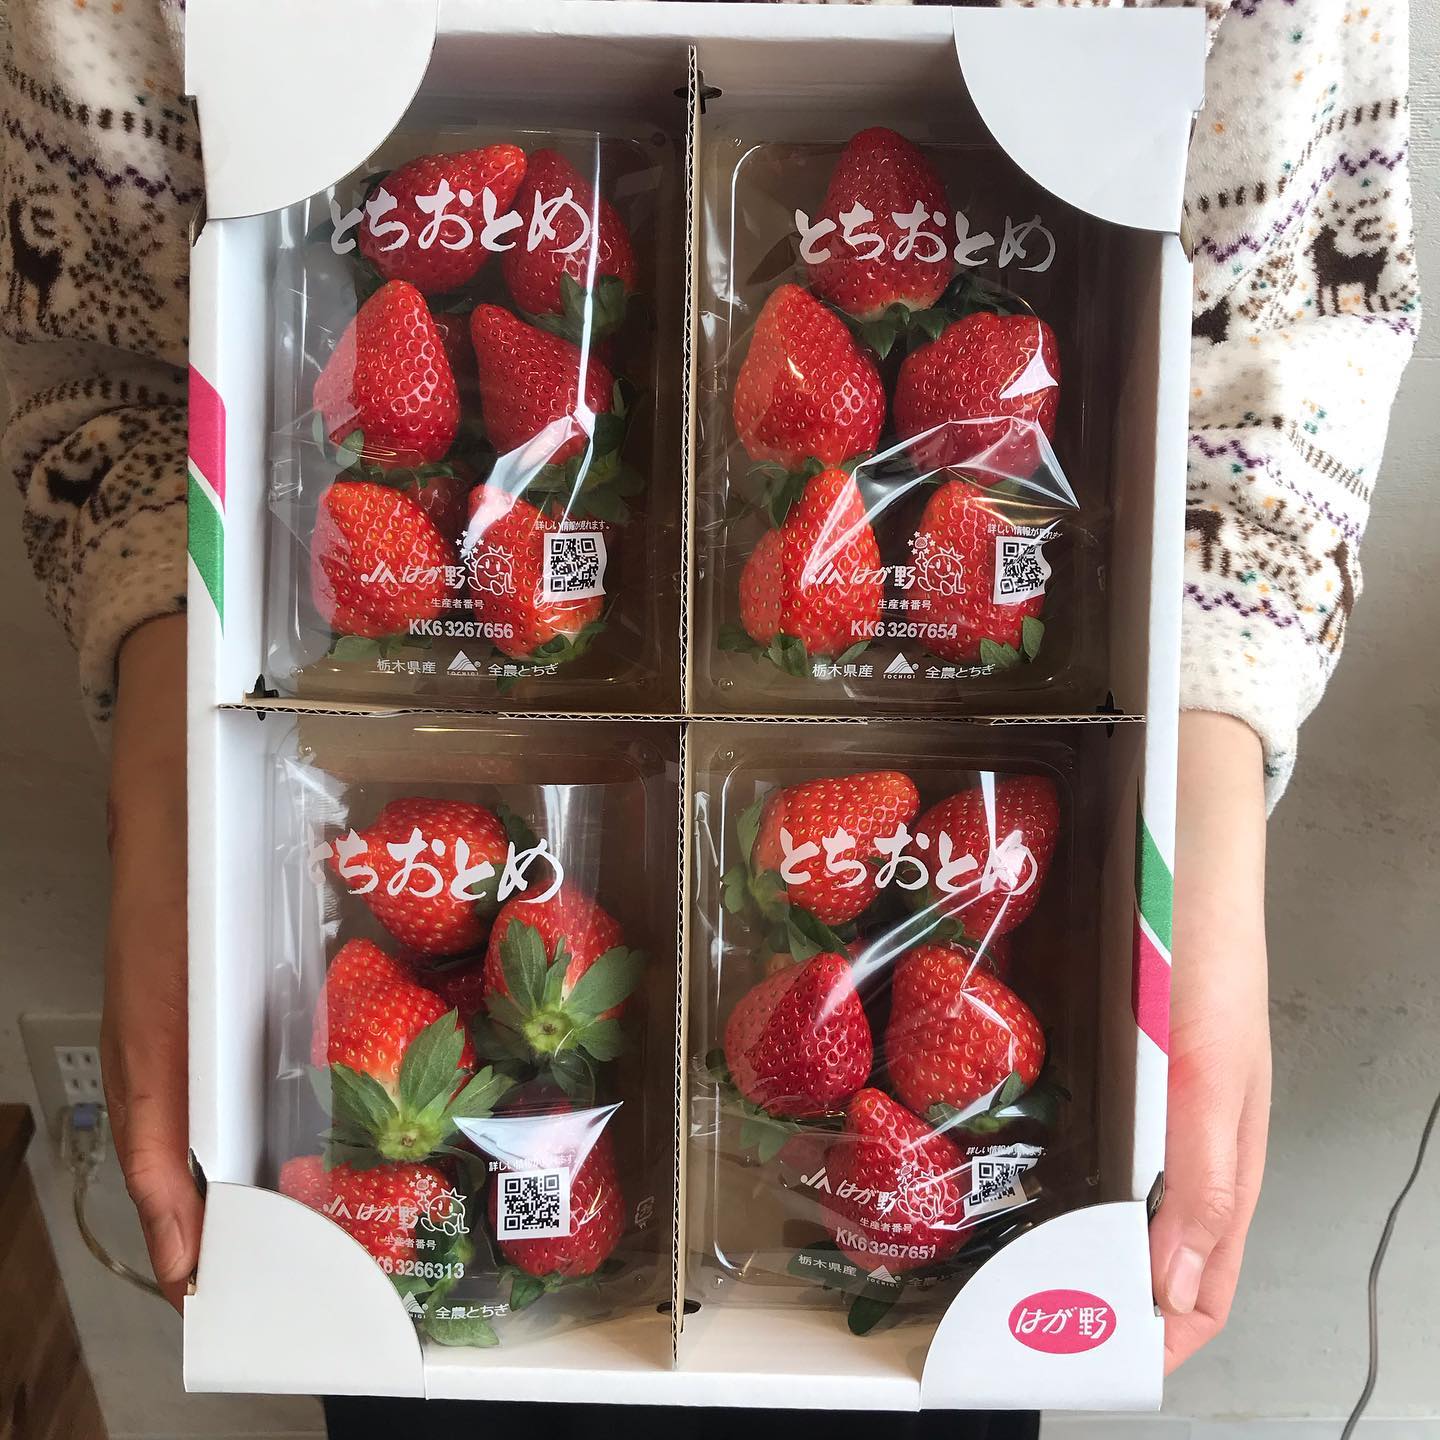 とちおとめ届きましたー栃木県真岡市の加藤農園さんのフレッシュなとちおとめです。それを使って今日から【いちごミルククリームサンド】でます！甘酸っぱい苺とミルククリームが相性抜群の去年も作った人気商品です️とちおとめの販売も行っています。美味しい苺とnoraのパンで素敵なクリスマスパーティはどうでしょう？